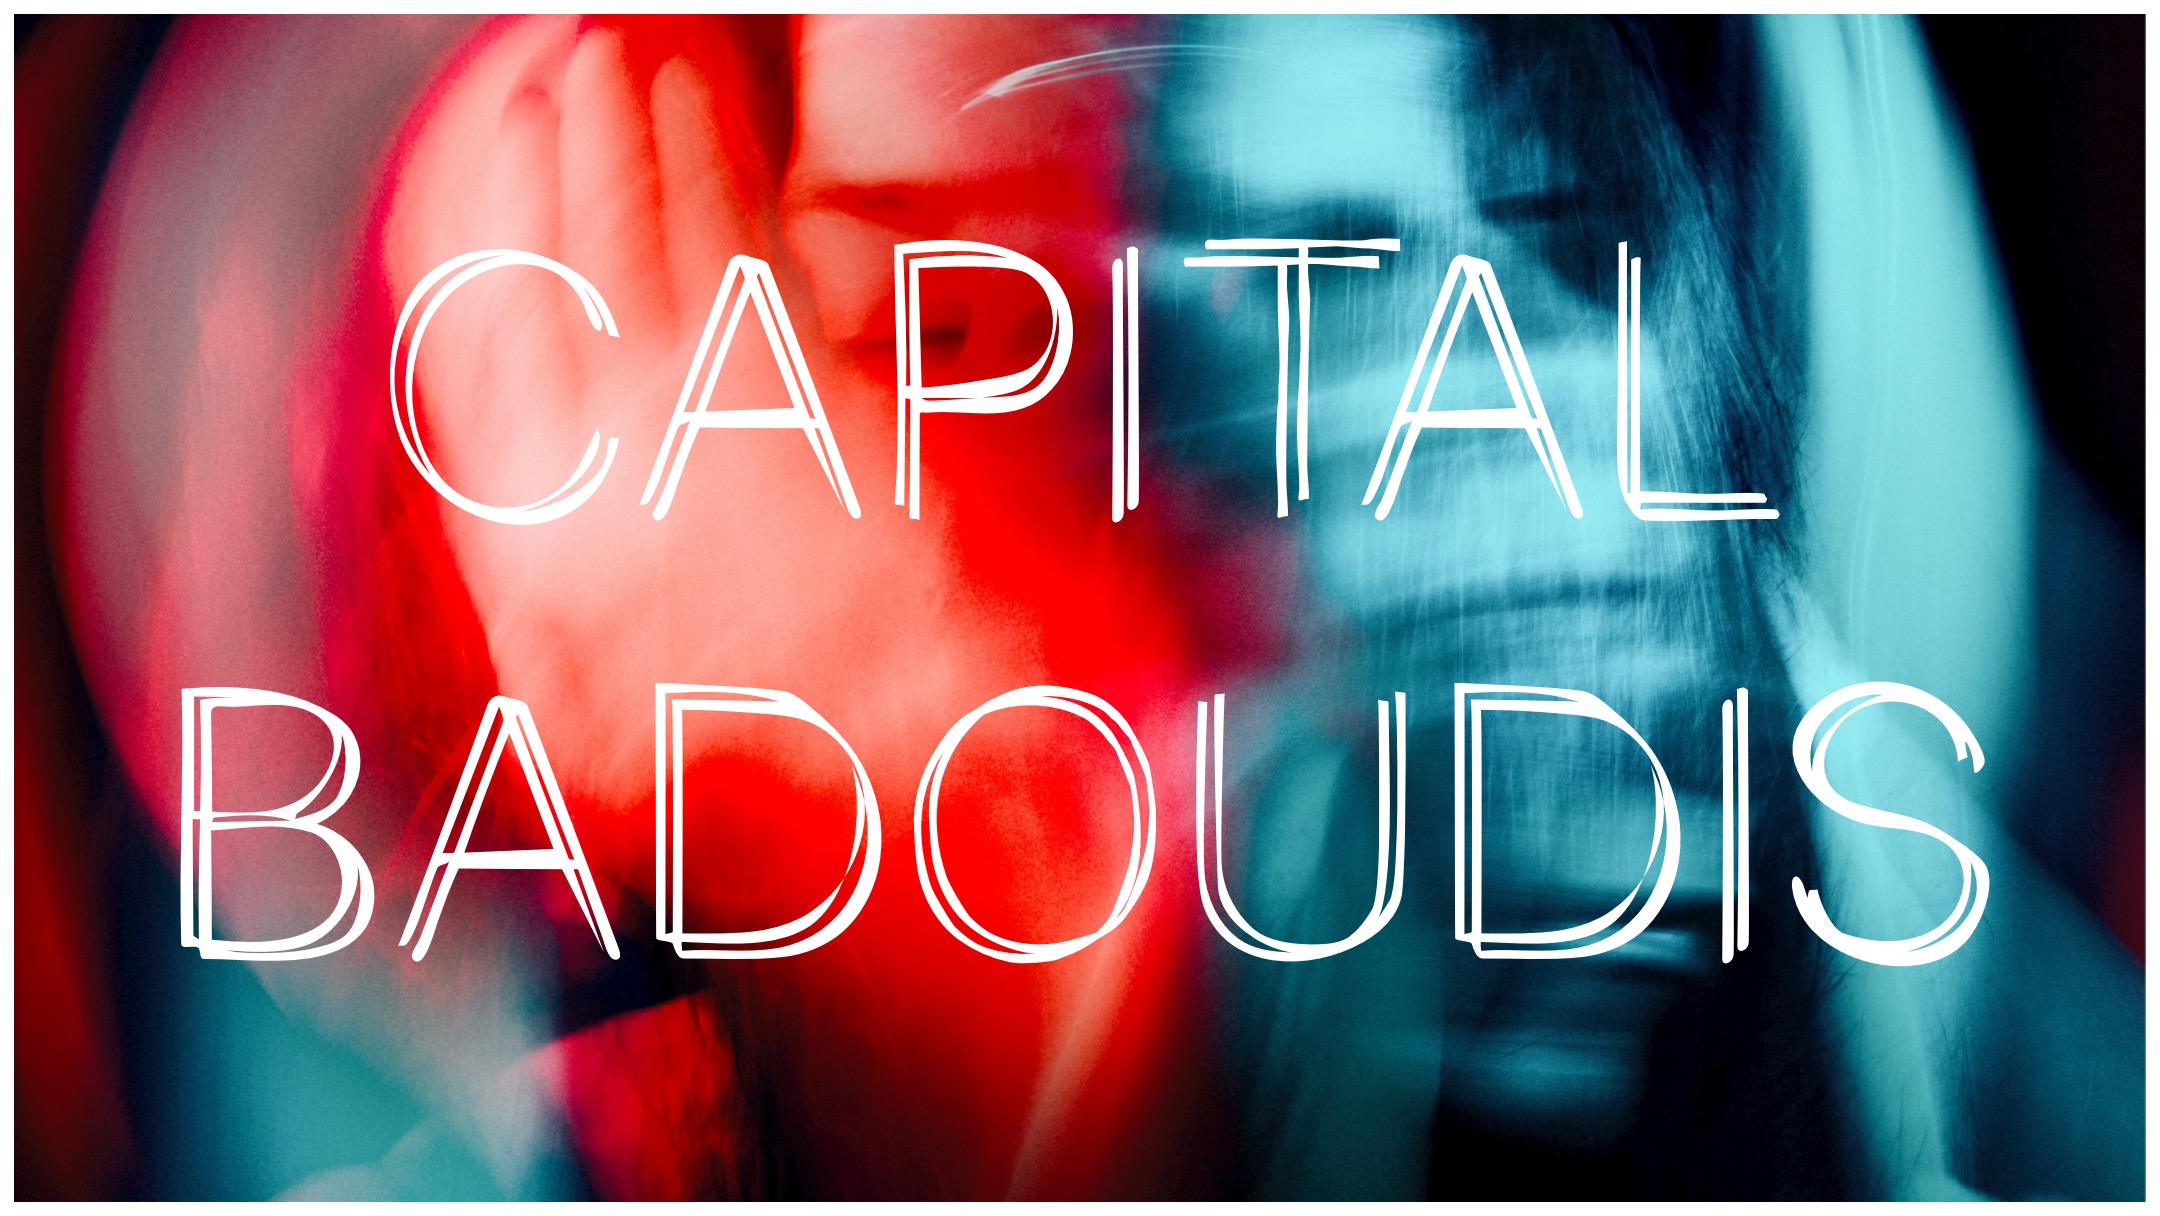 Capital Badoudis